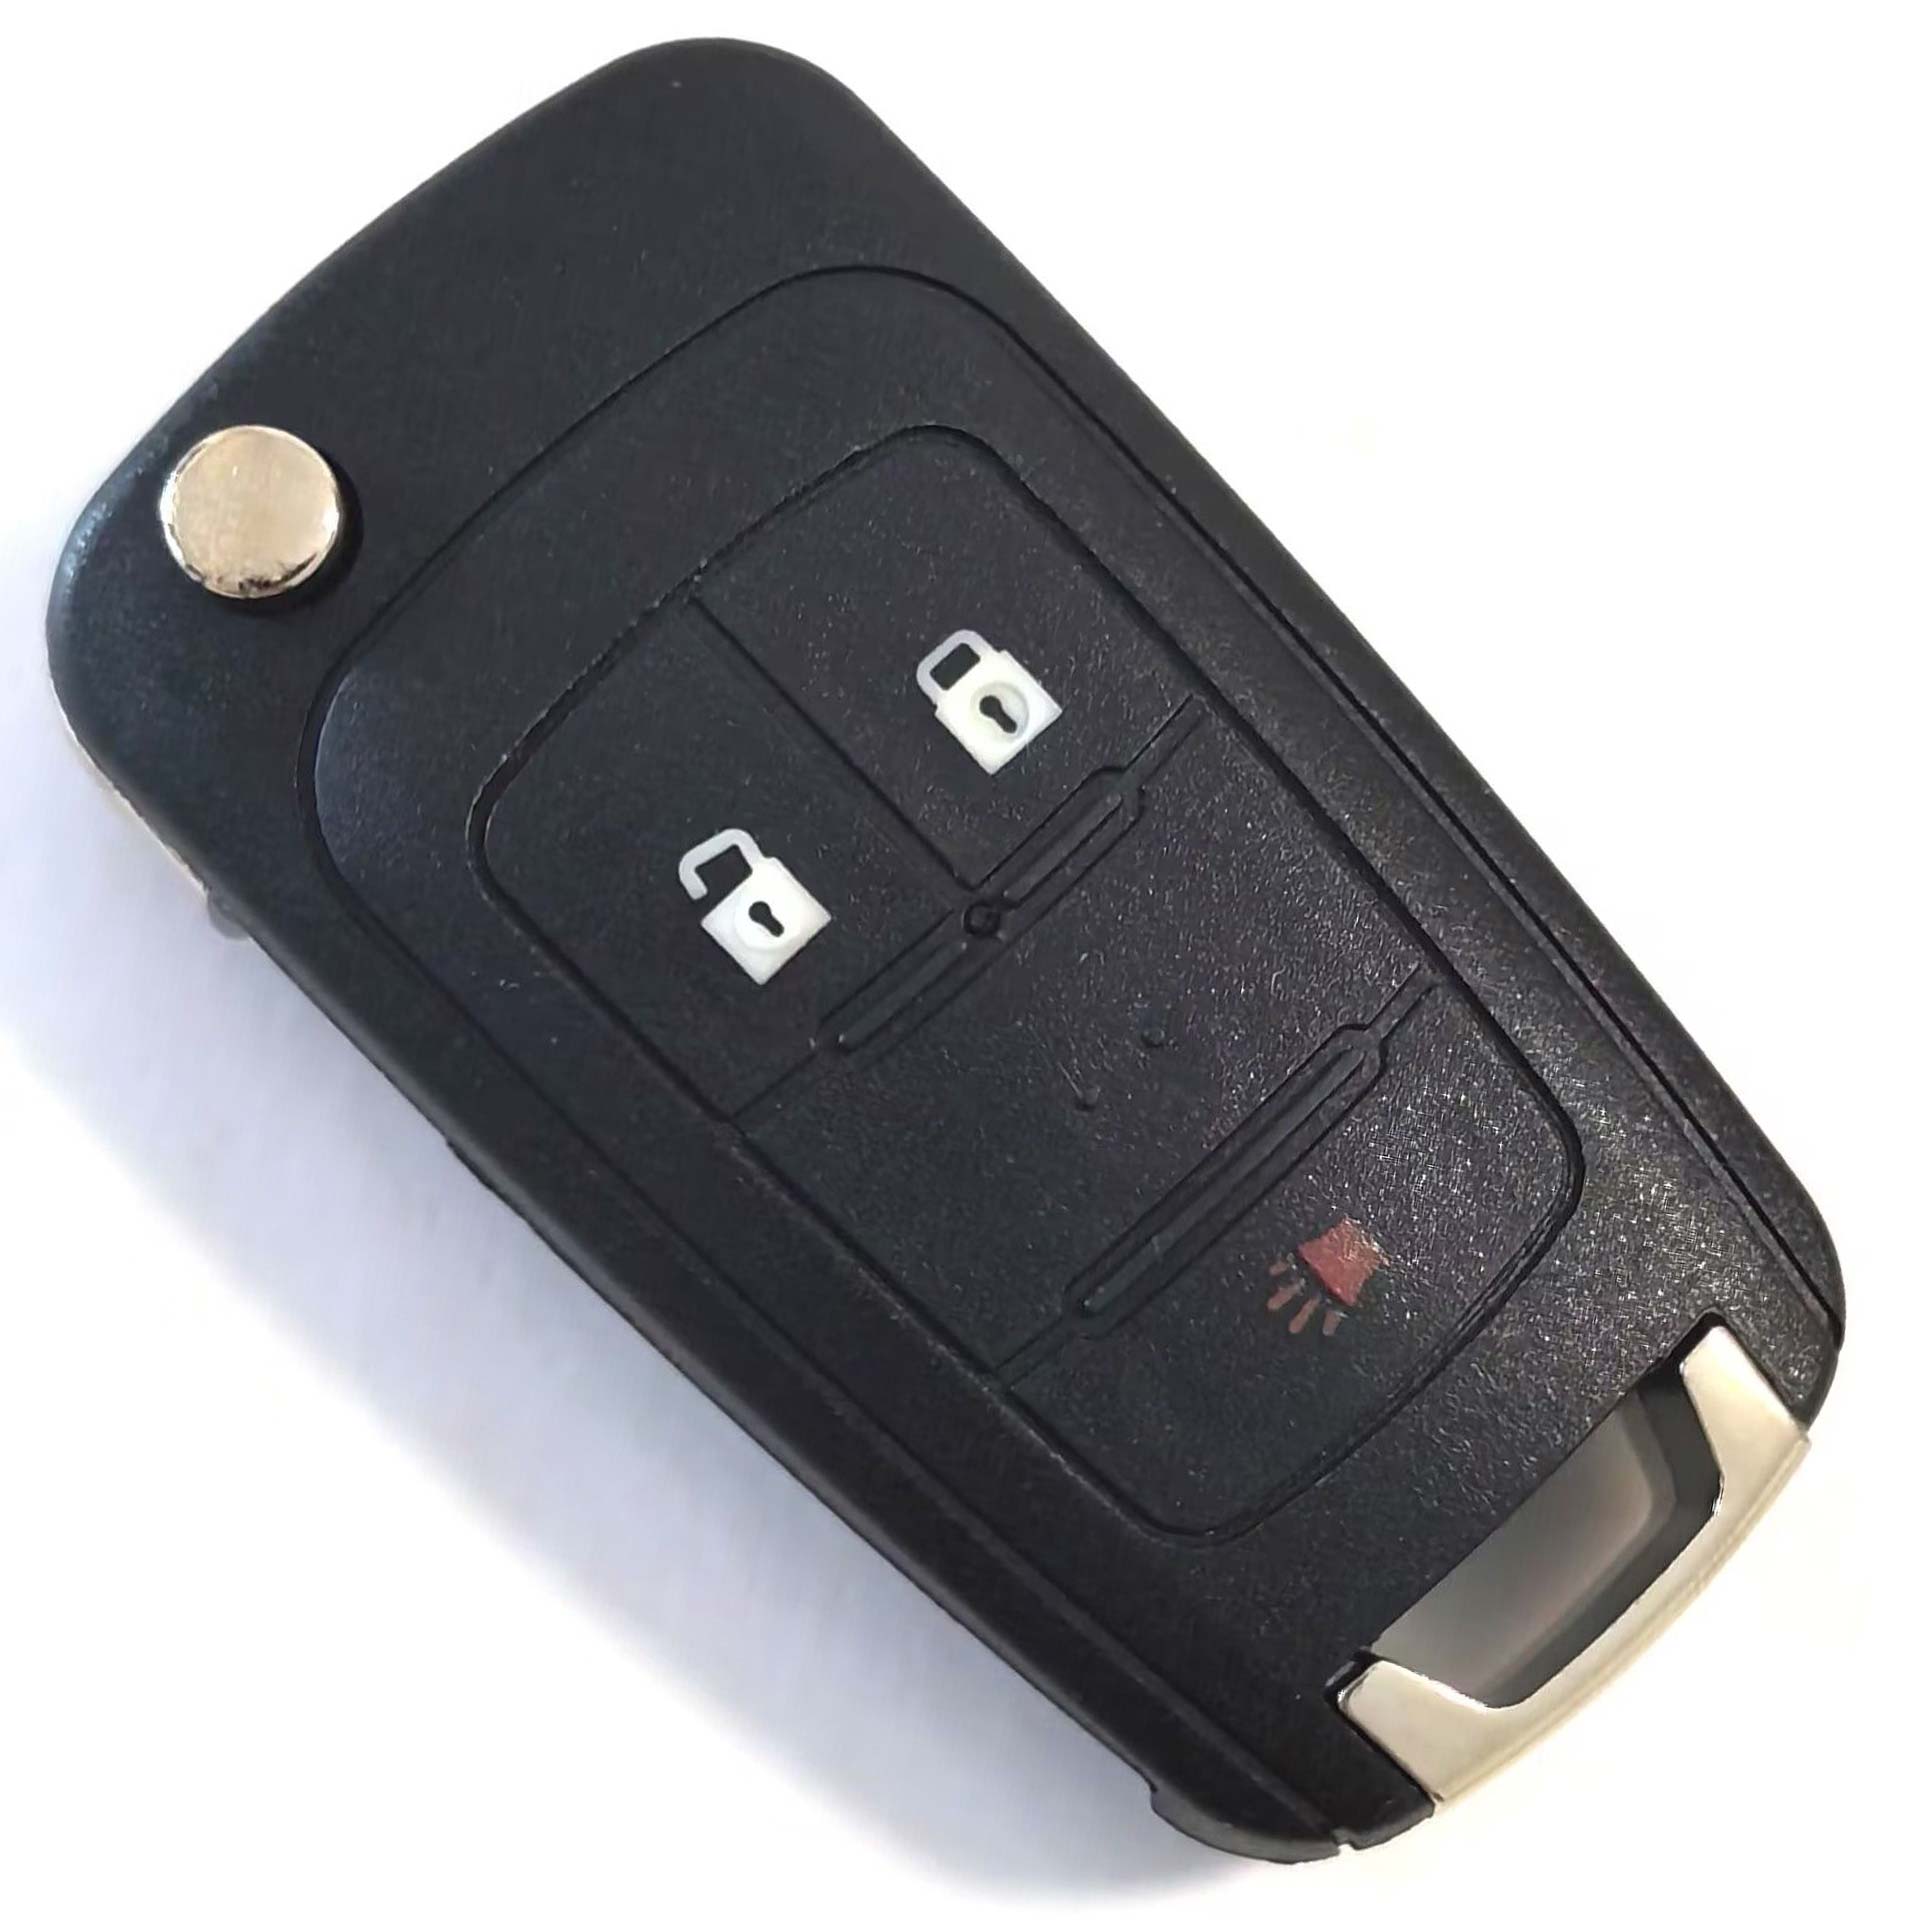 315 Flip Remote Key for Chevrolet Cruze Impala Malibu / OHT05918179